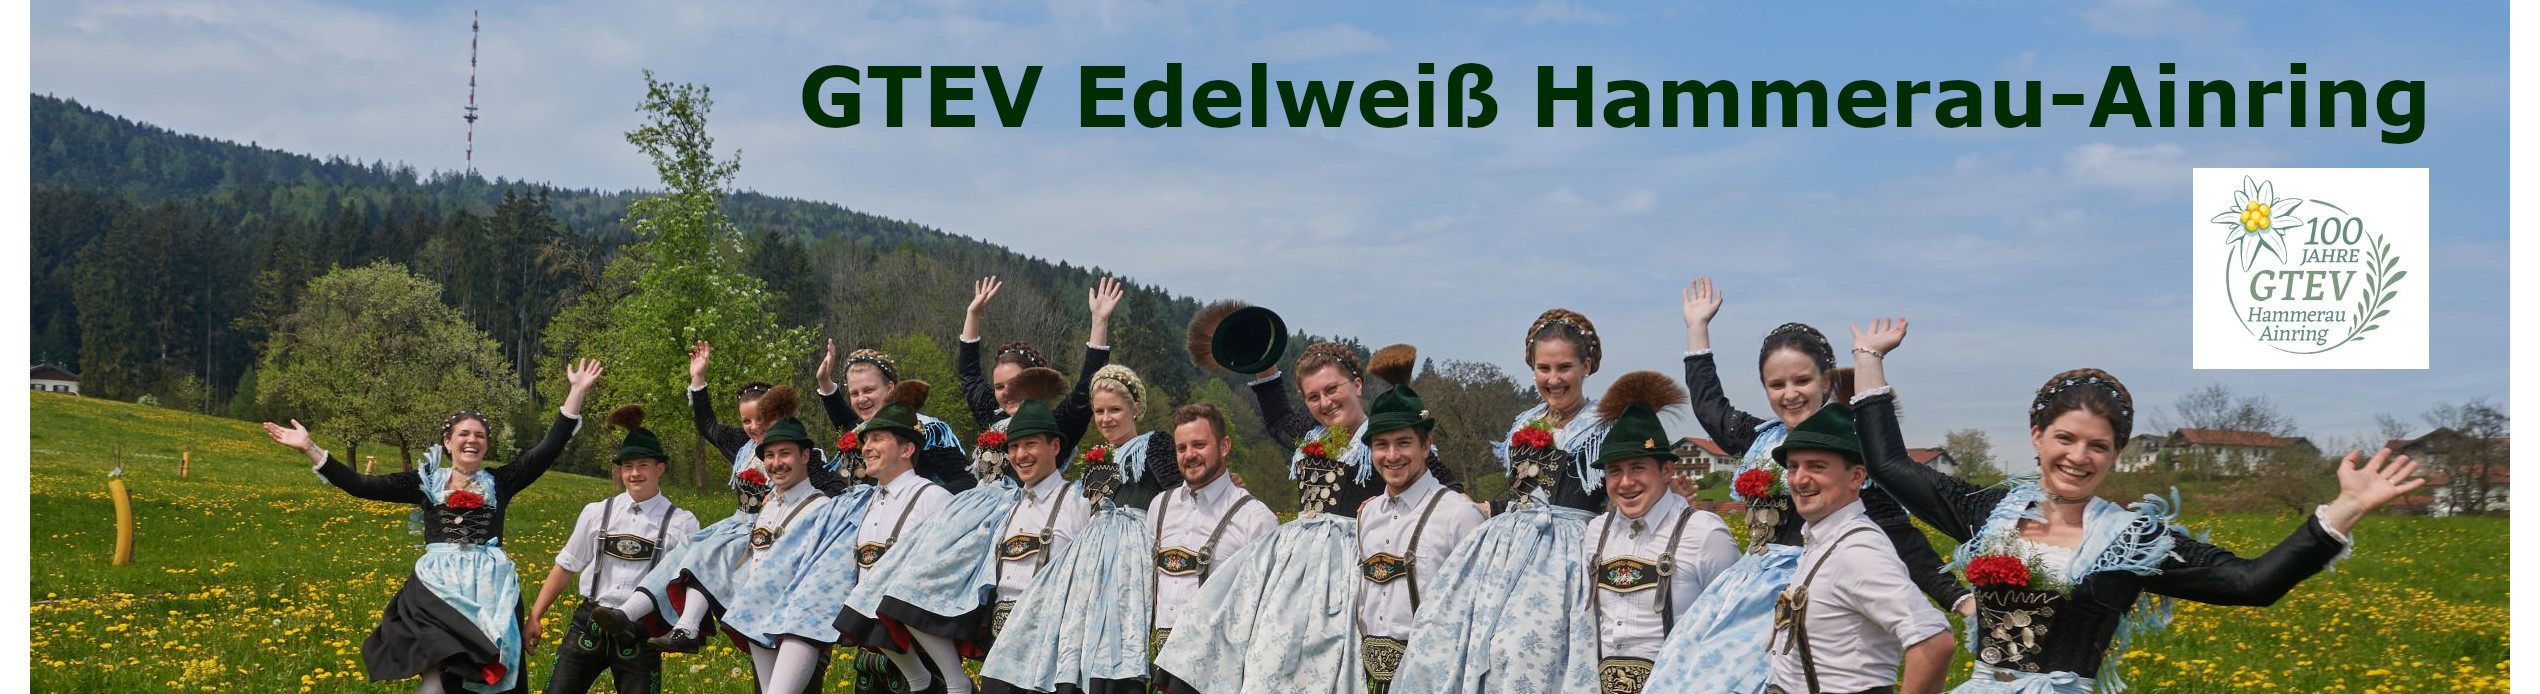 GTEV Edelweiß Hammerau-Ainring